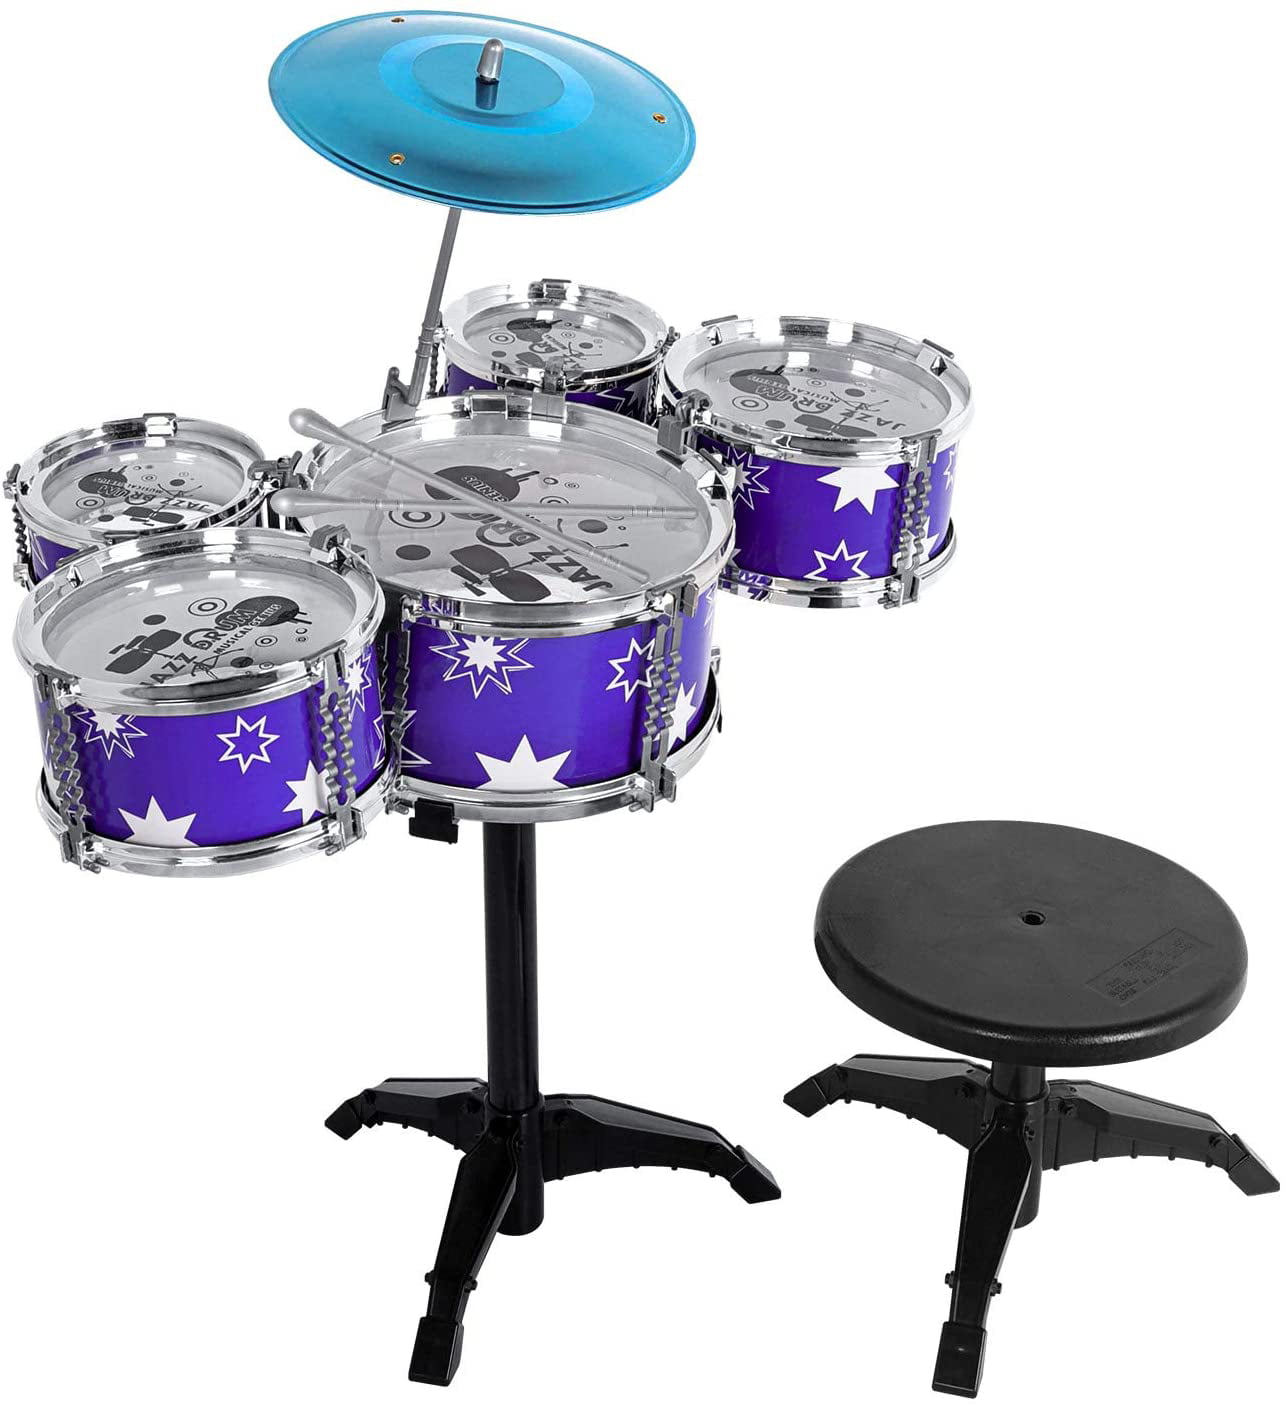 Details about   Junior Toy Friend Drum Musical Instrument Children Kids Educational Choose Color 